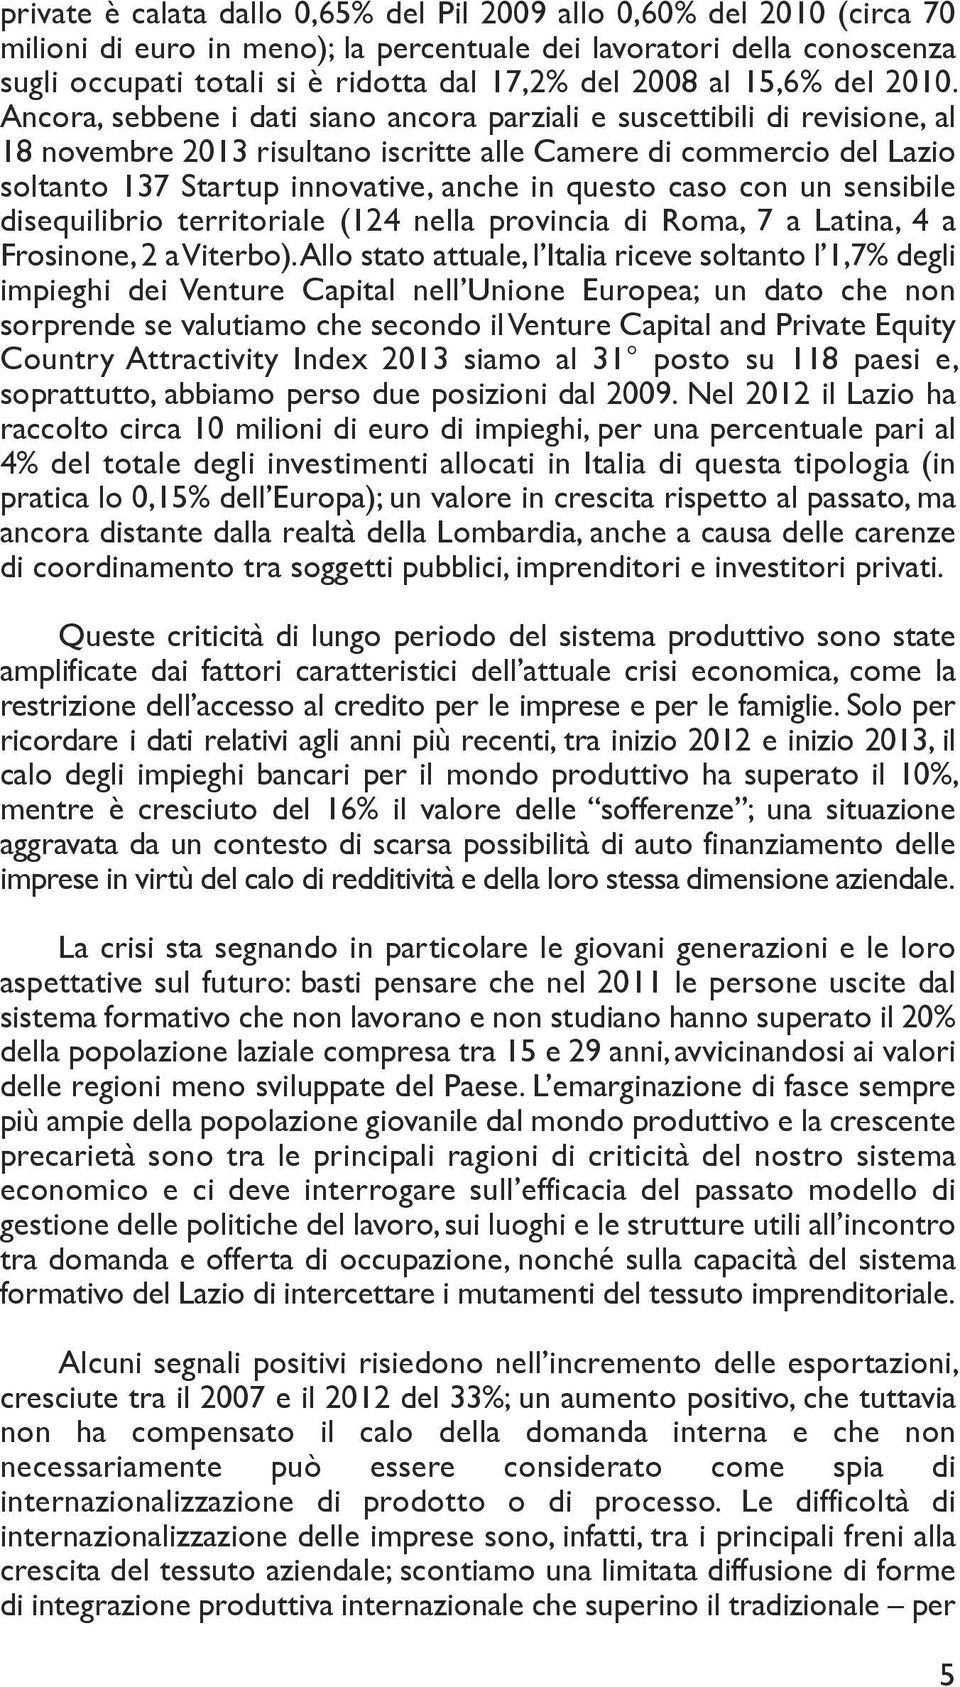 Ancora, sebbene i dati siano ancora parziali e suscettibili di revisione, al 18 novembre 2013 risultano iscritte alle Camere di commercio del Lazio soltanto 137 Startup innovative, anche in questo